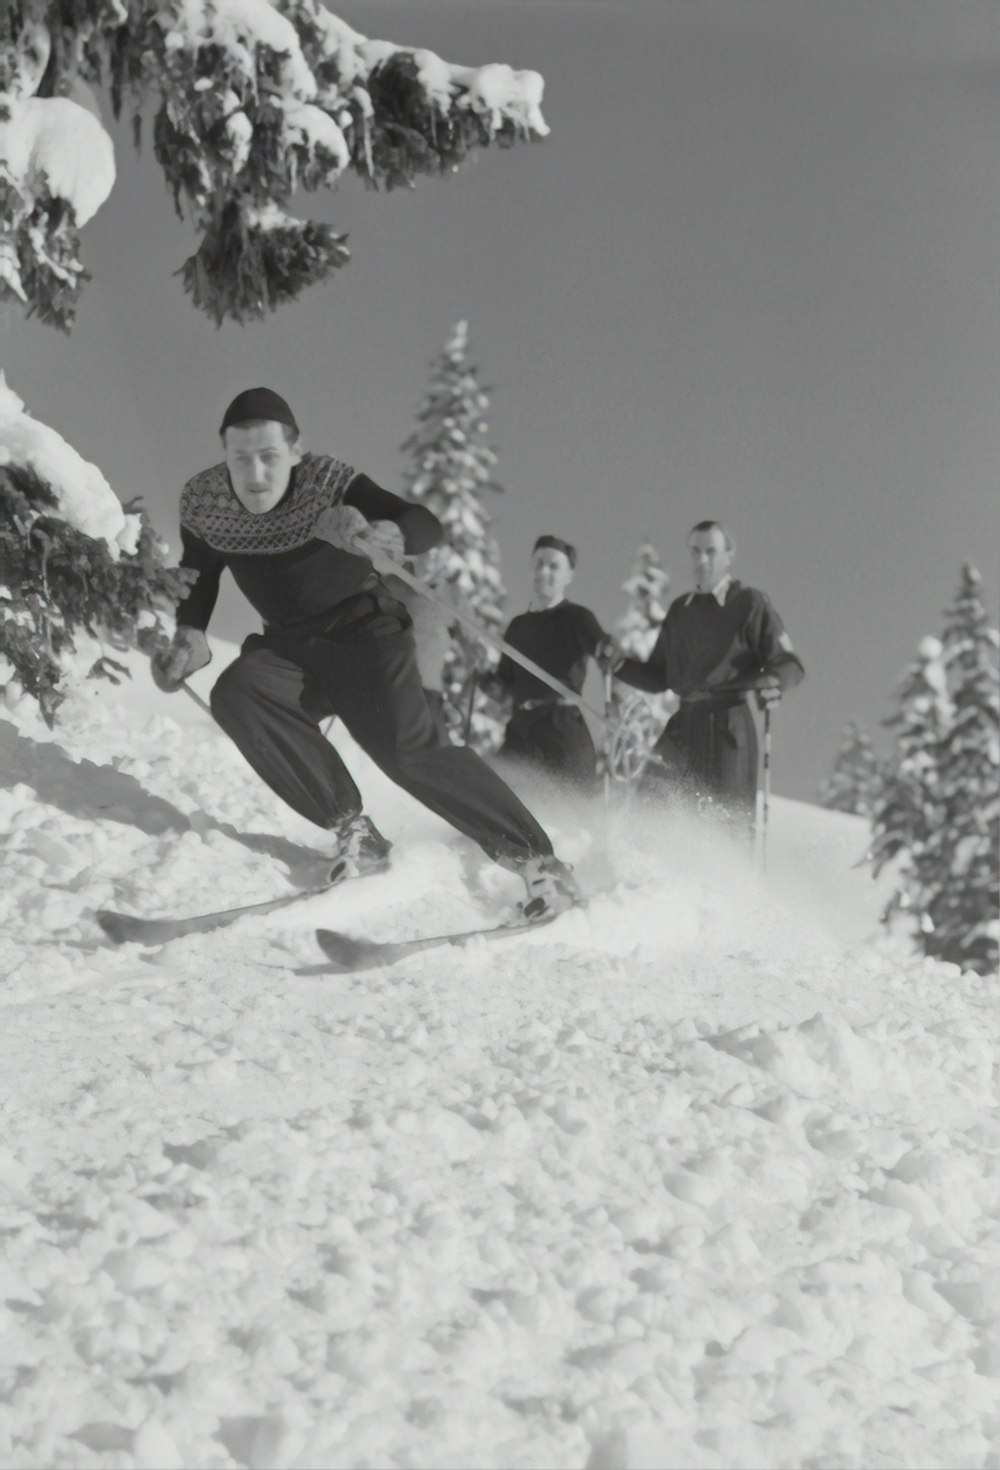 노르딕 스키를 타는 사람들의 회색조 사진